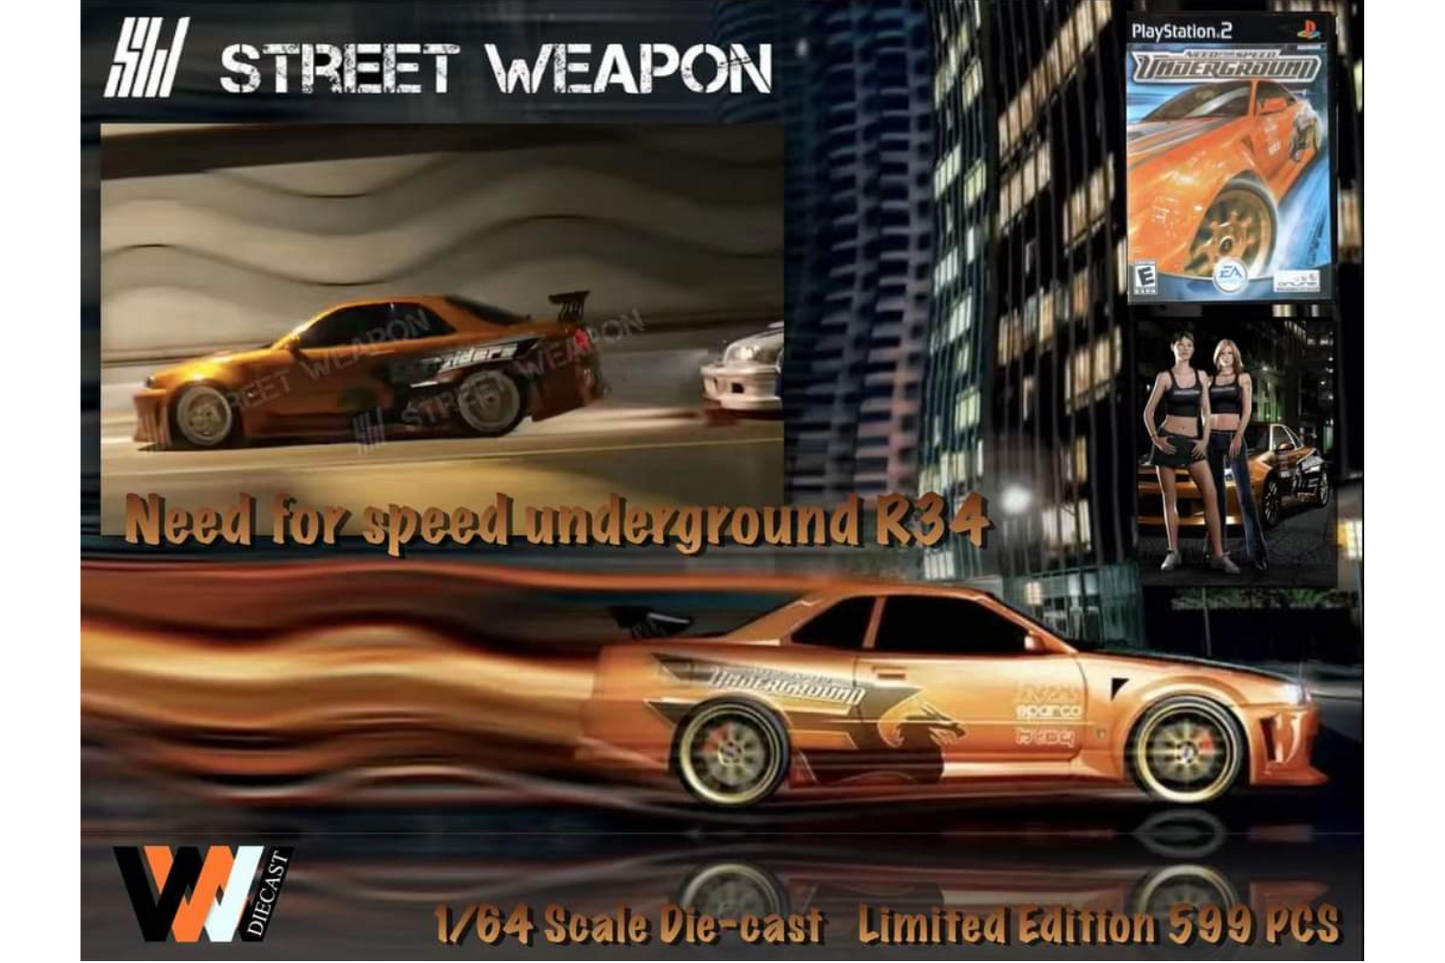 Street Weapon x WWD 1/64 Nissan Skyline (R34) Need For Speed Underground Livery